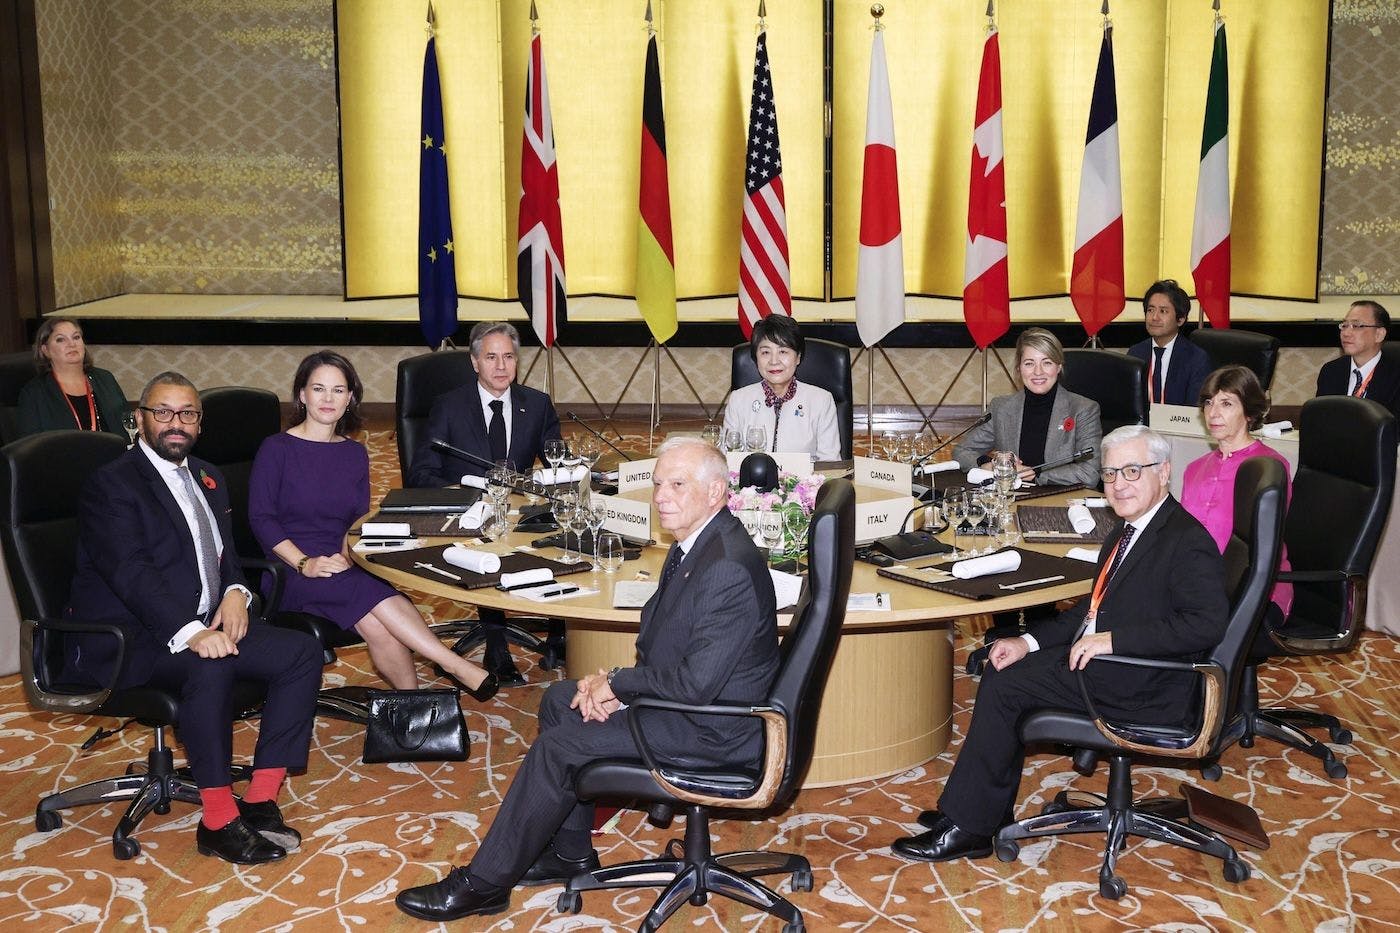 China Politik, Außenpolitik, Anti-China: G7-Außenministertreffen in Tokio. Die japanische Außenministerin Yoko Kamikawa (C) und andere Teilnehmer eines Außenministertreffens der G7